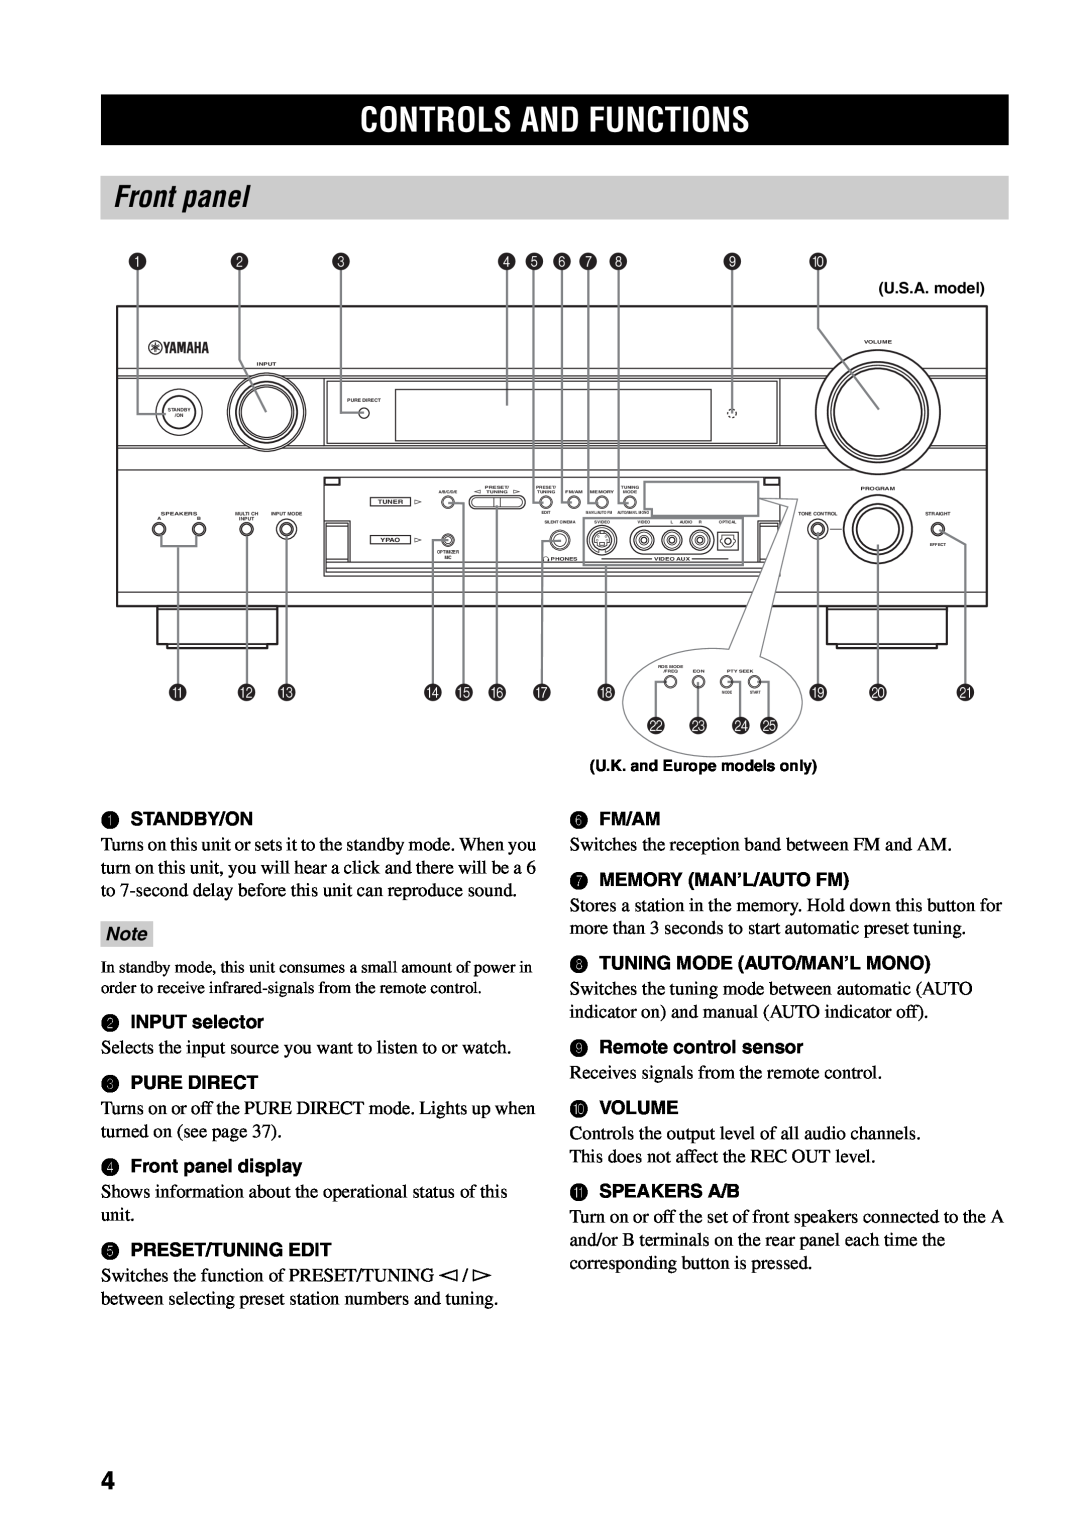 Yamaha RX-V1500 owner manual Controls And Functions, Front panel, 4 5 6 7, A B C, D E F G H, L M N O 